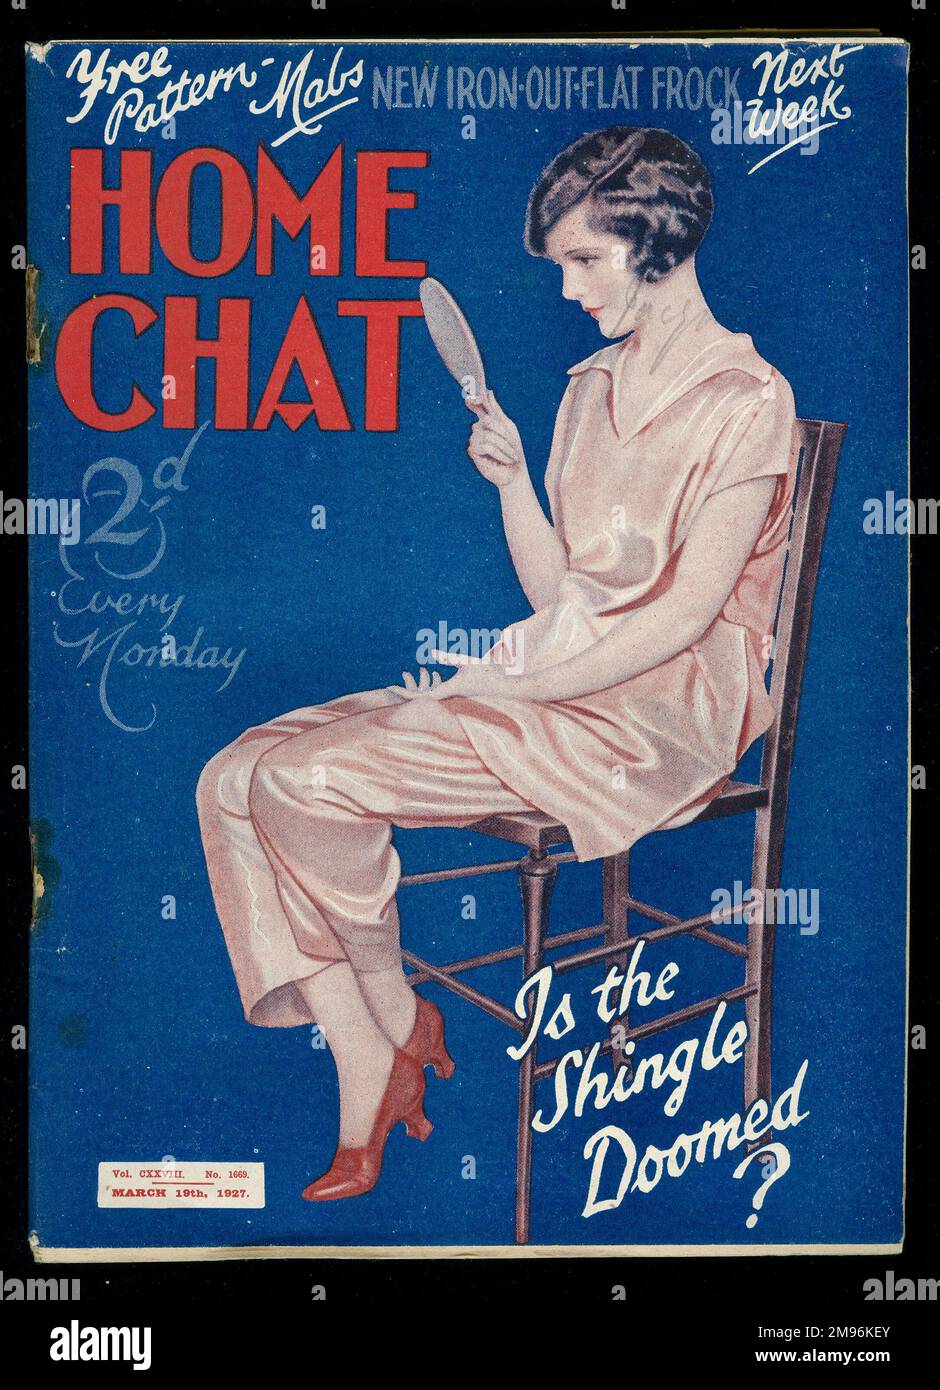 Titelseite des "Home Chat" Magazins, die fragt, ob die Schindel verdammt ist? Eine junge Frau, die ihre Frisur in einem Handspiegel ansieht. Stockfoto